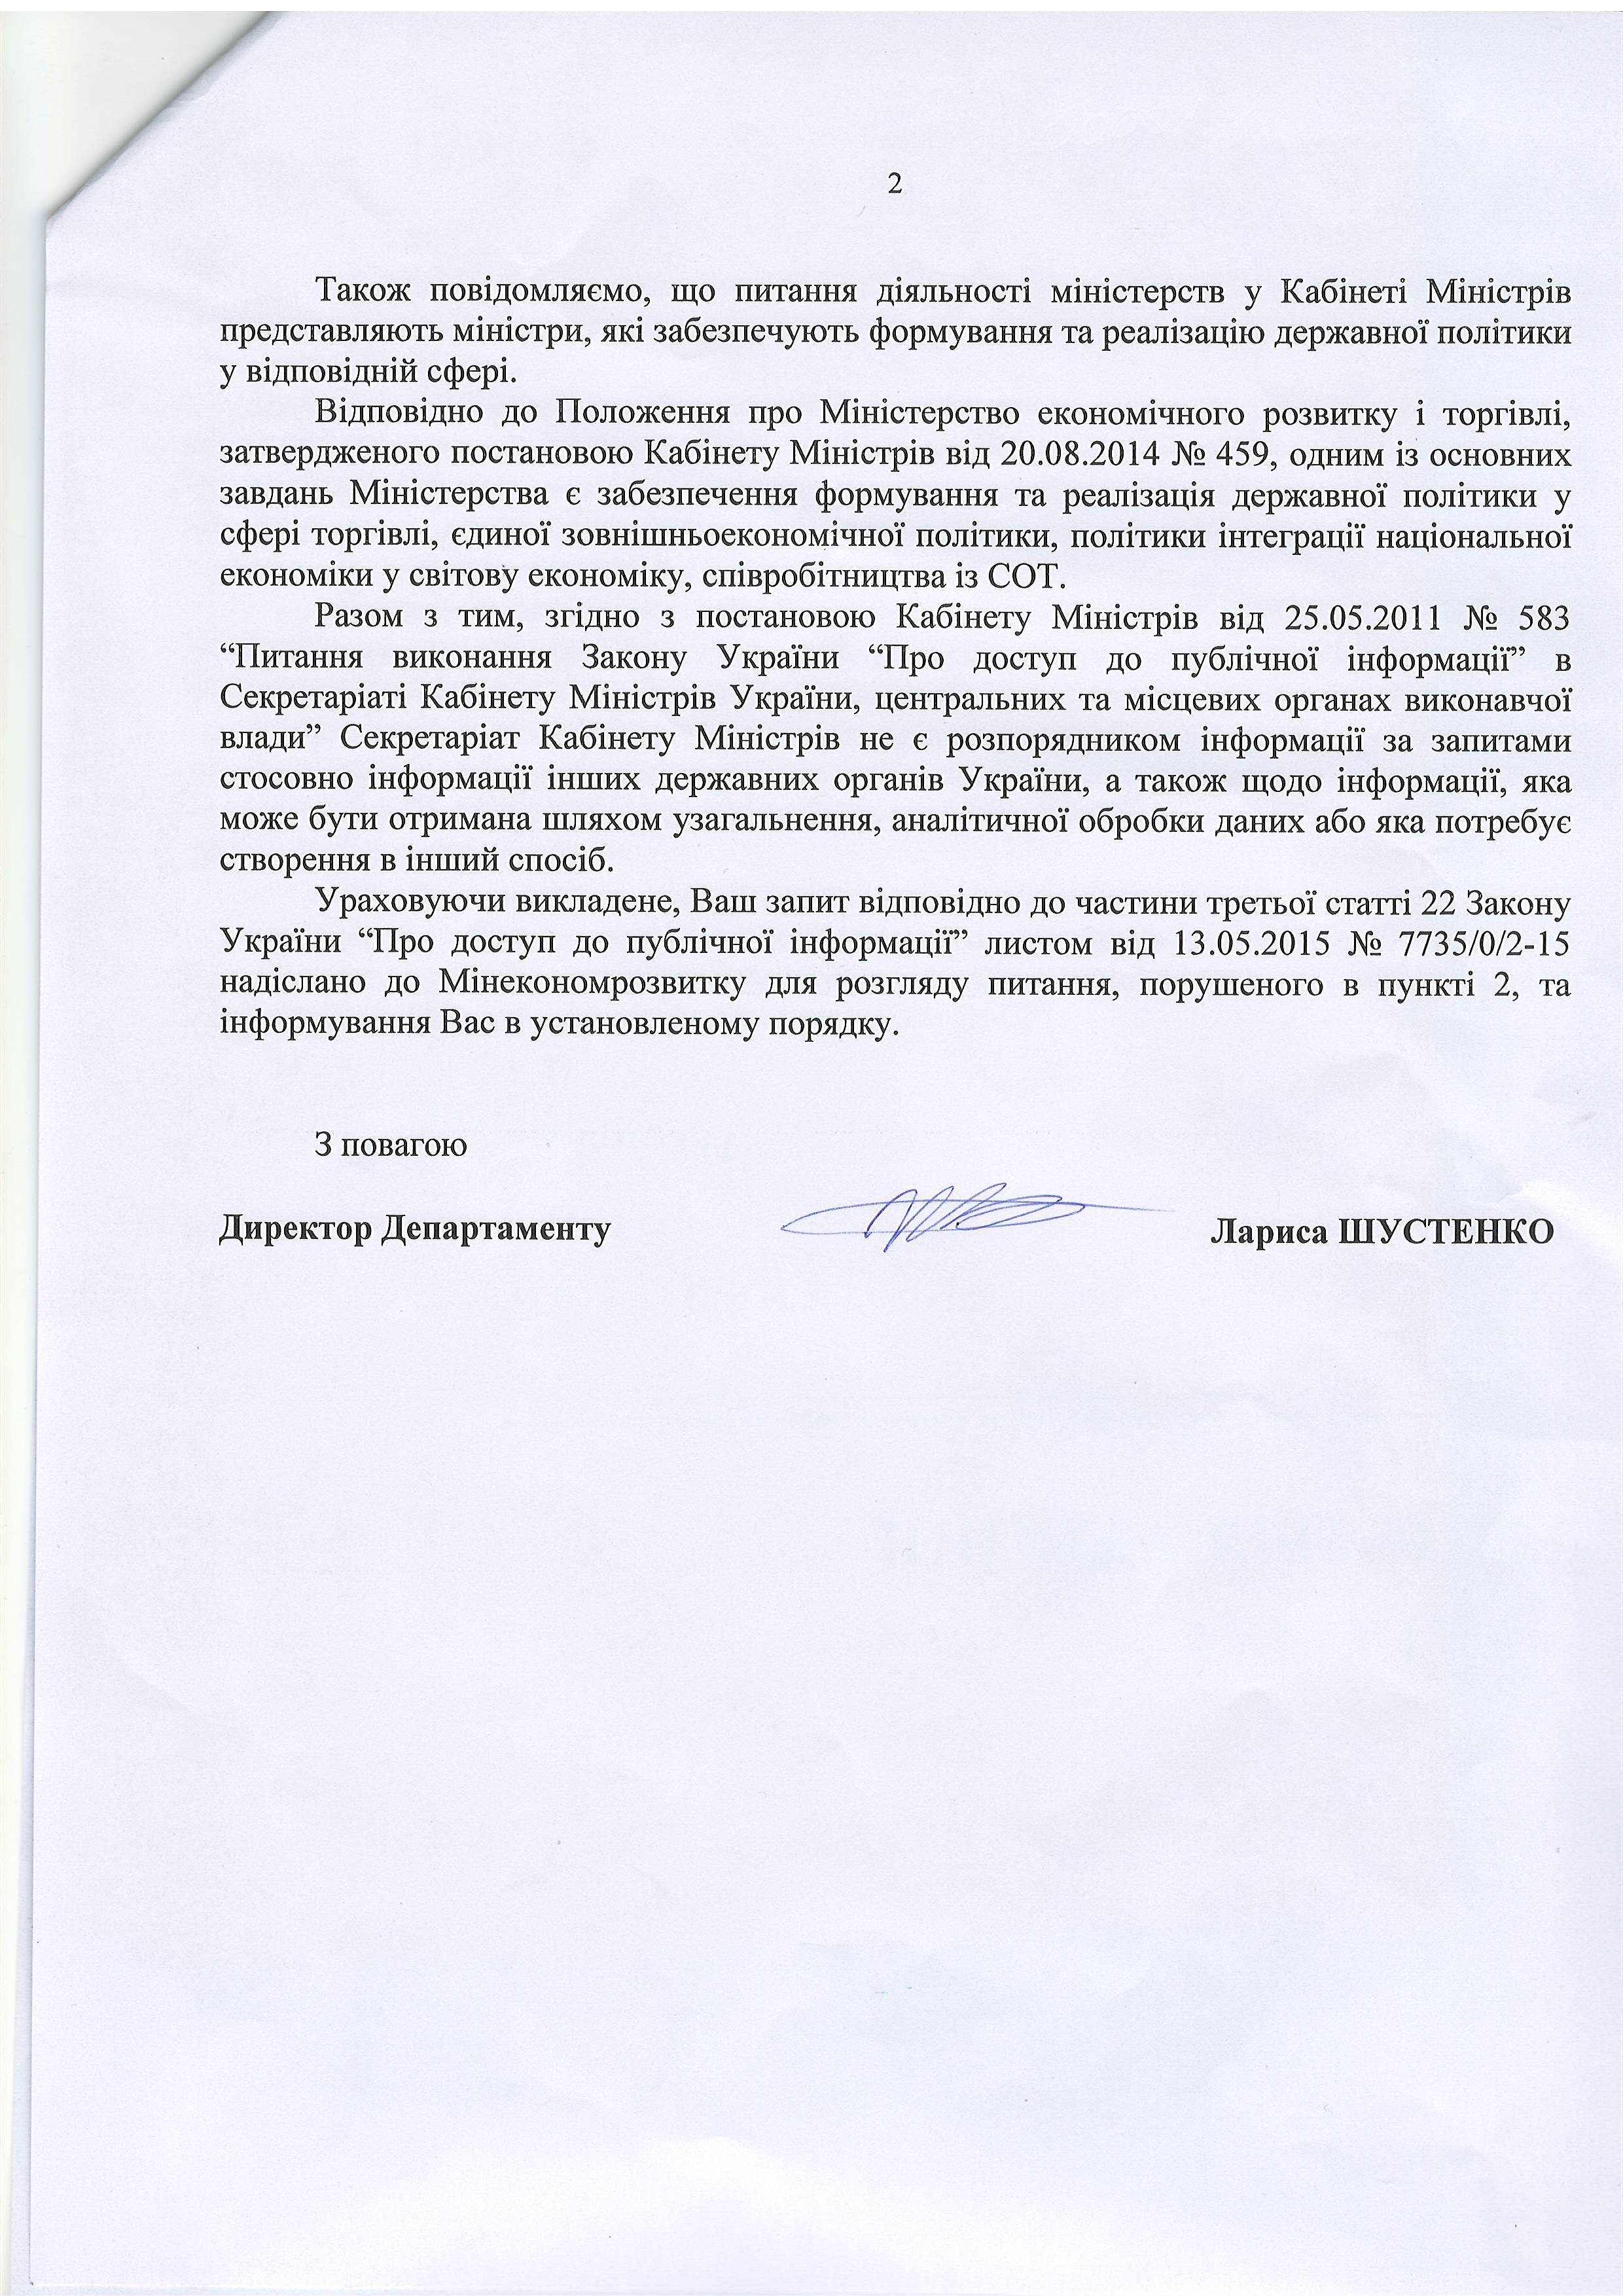 лист Кабінету Міністрів України від 14 травня 2015 року